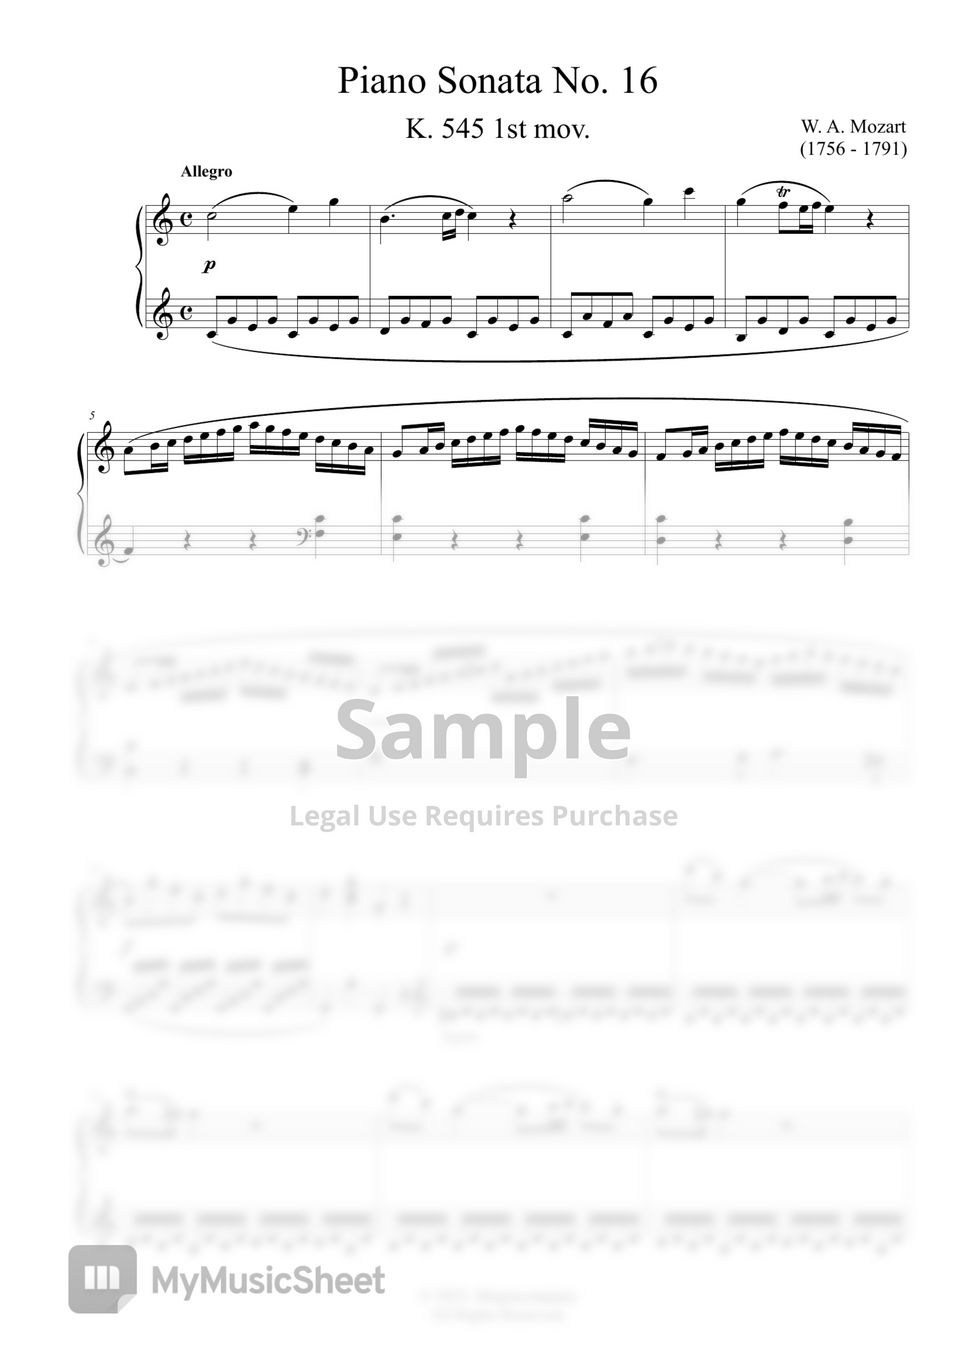 W.A.Mozart - Mozart Piano Sonata No.16 by MyMusicSheet Official